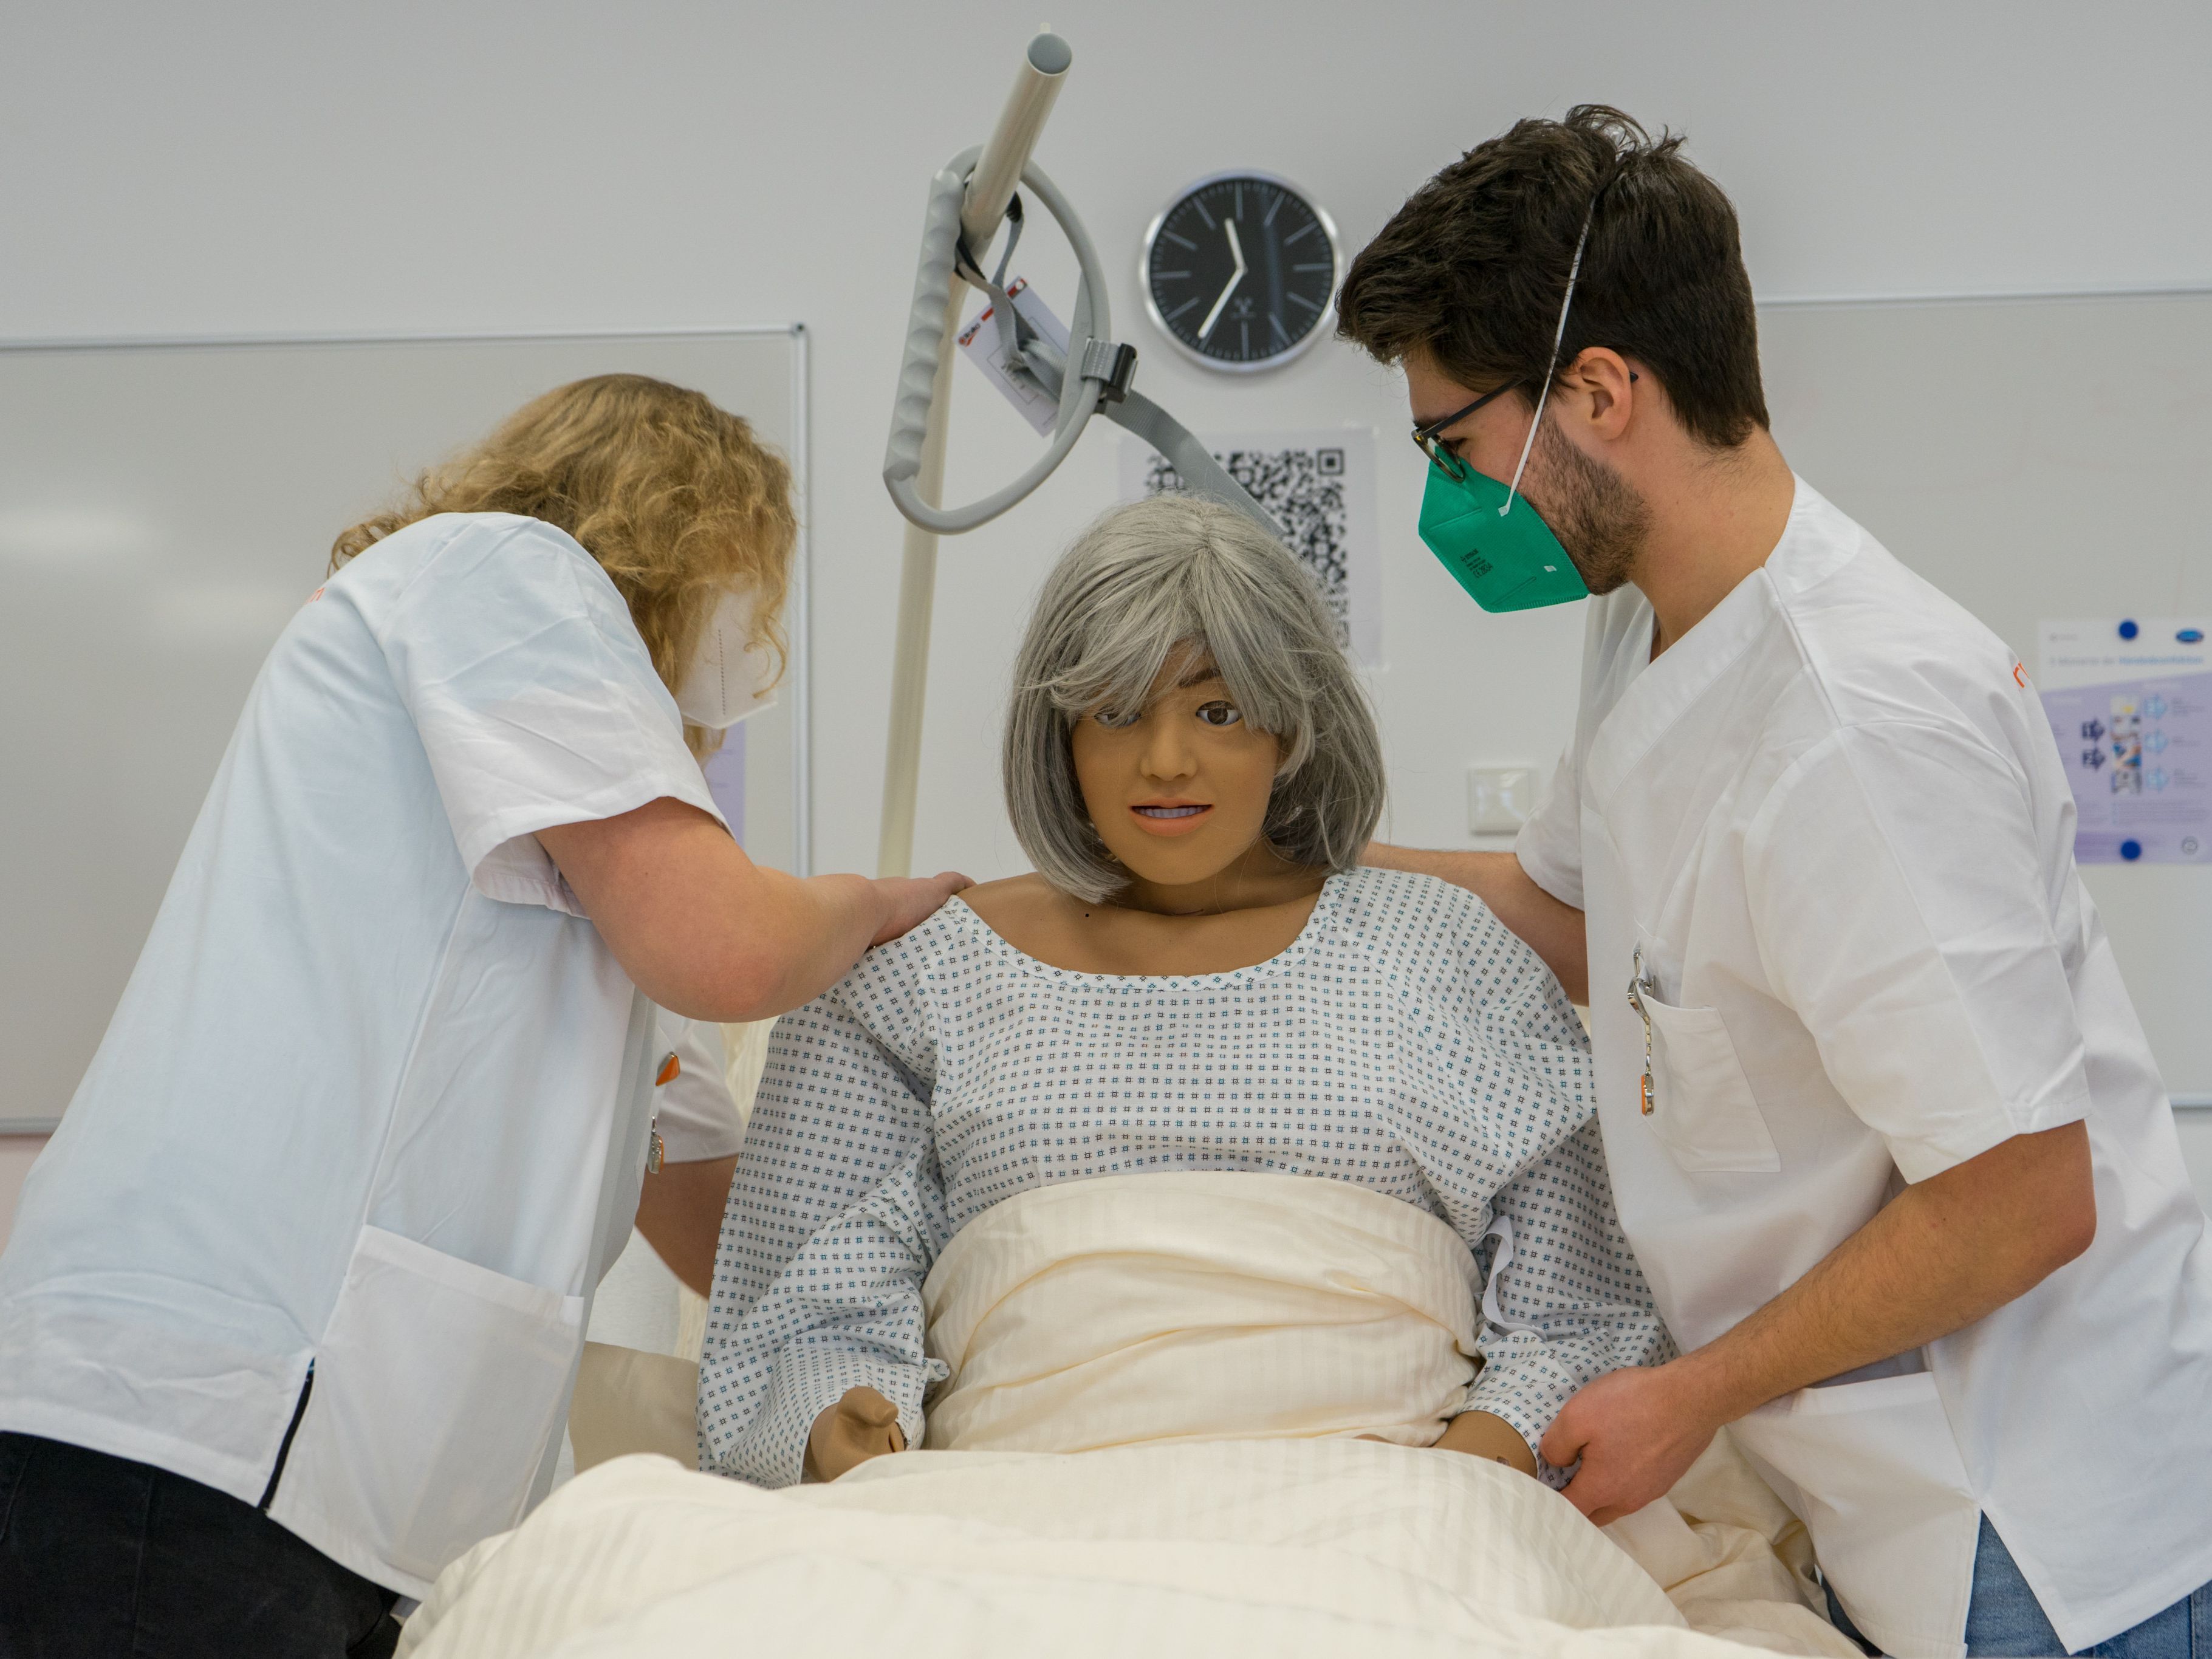 Zwei Studierende üben den richtigen Umgang mit Patient*innen an einer Simulationspuppe, die in einem Krankenhausbett liegt.